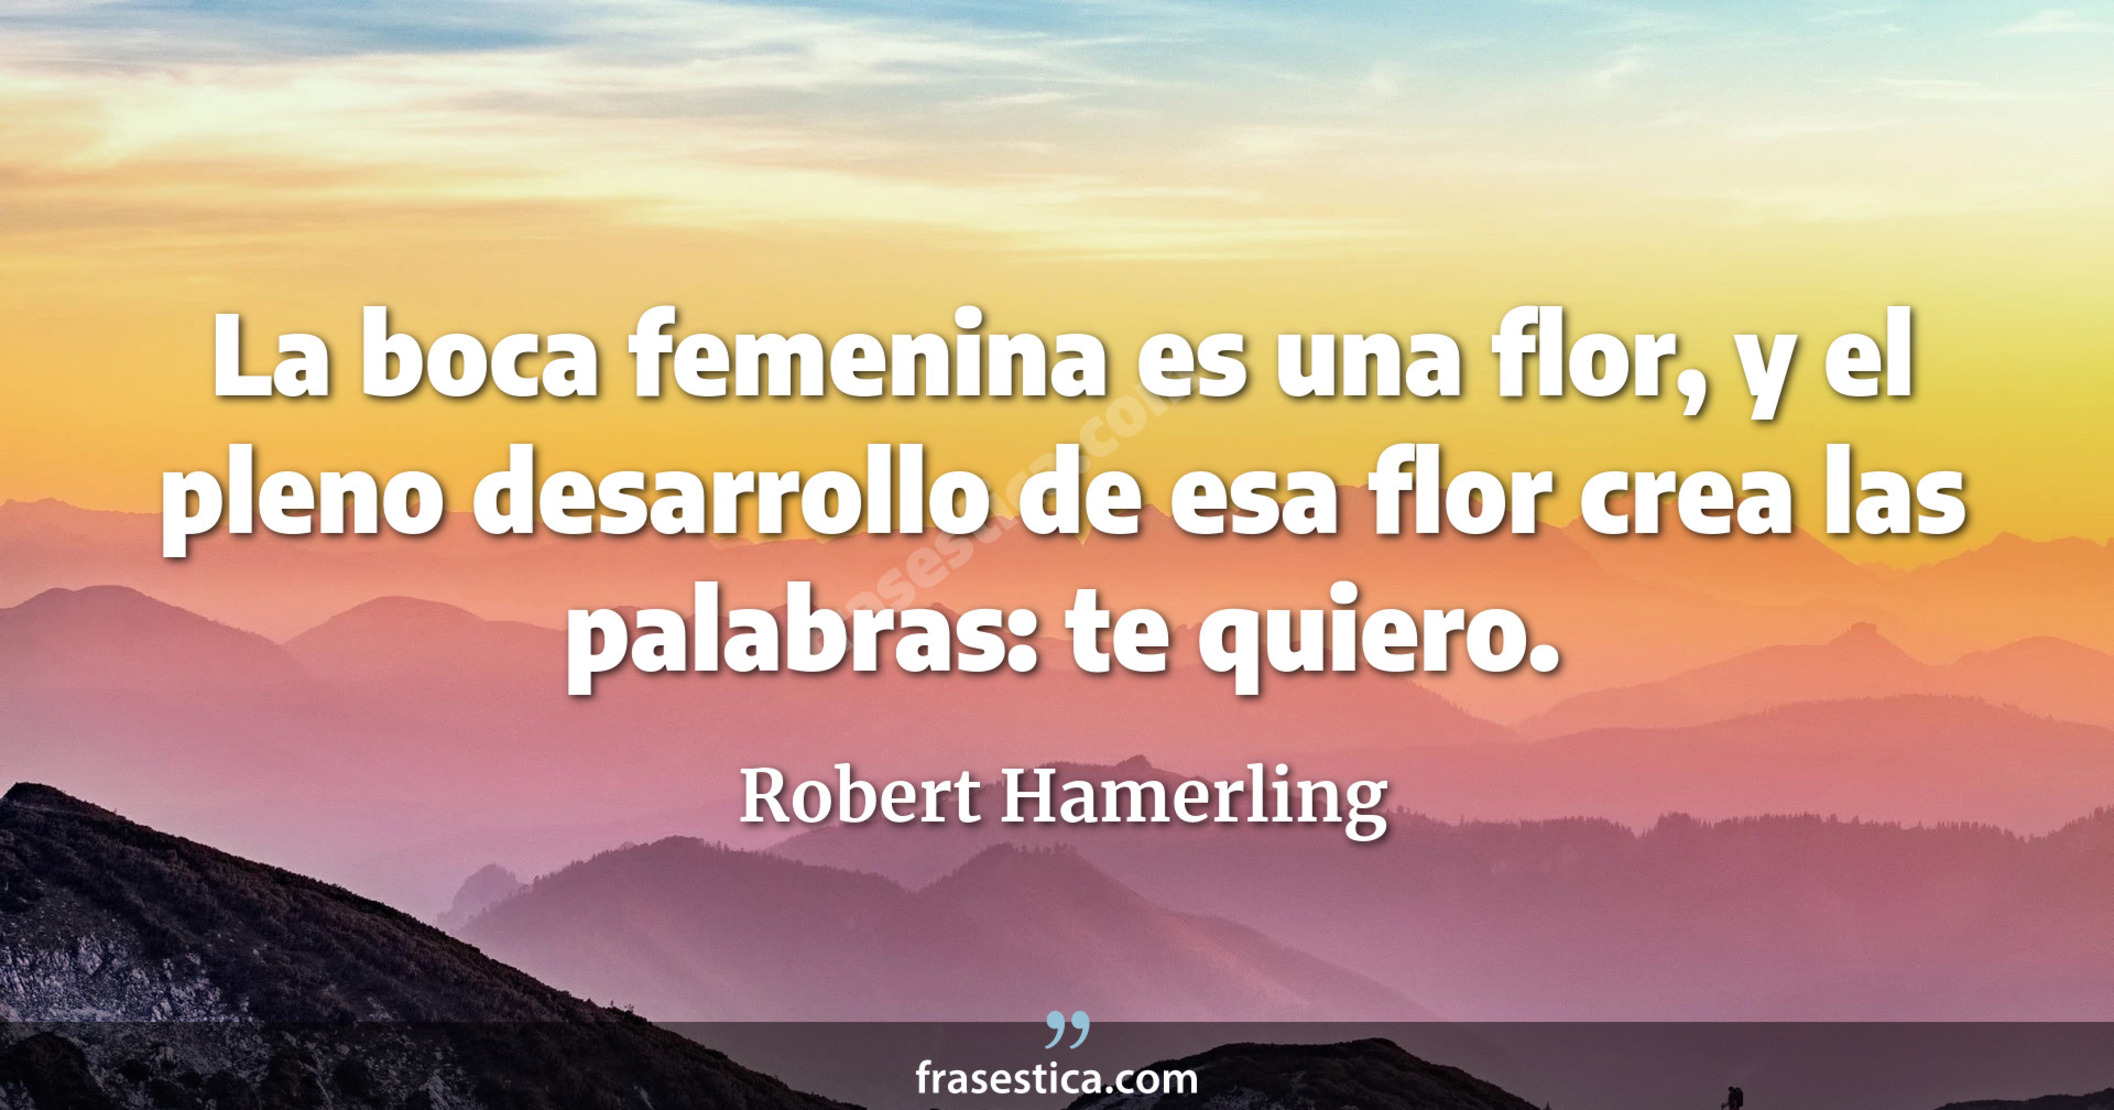 La boca femenina es una flor, y el pleno desarrollo de esa flor crea las palabras: te quiero. - Robert Hamerling